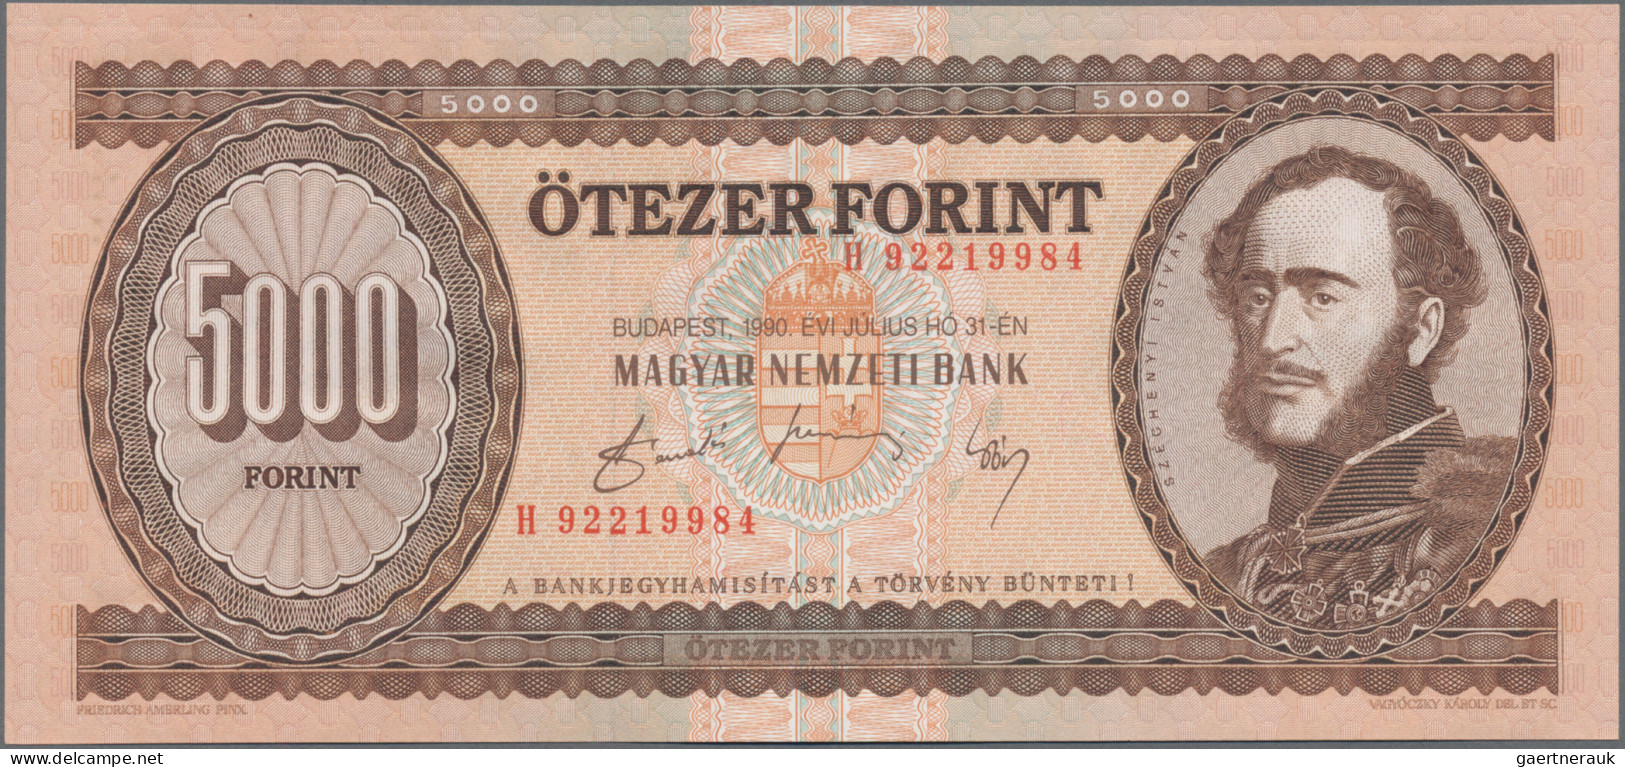 Hungary: Magyar Nemzeti Bank 5000 Forint 1990 + 1995, P.177a+d, In Perfect Condi - Hungary